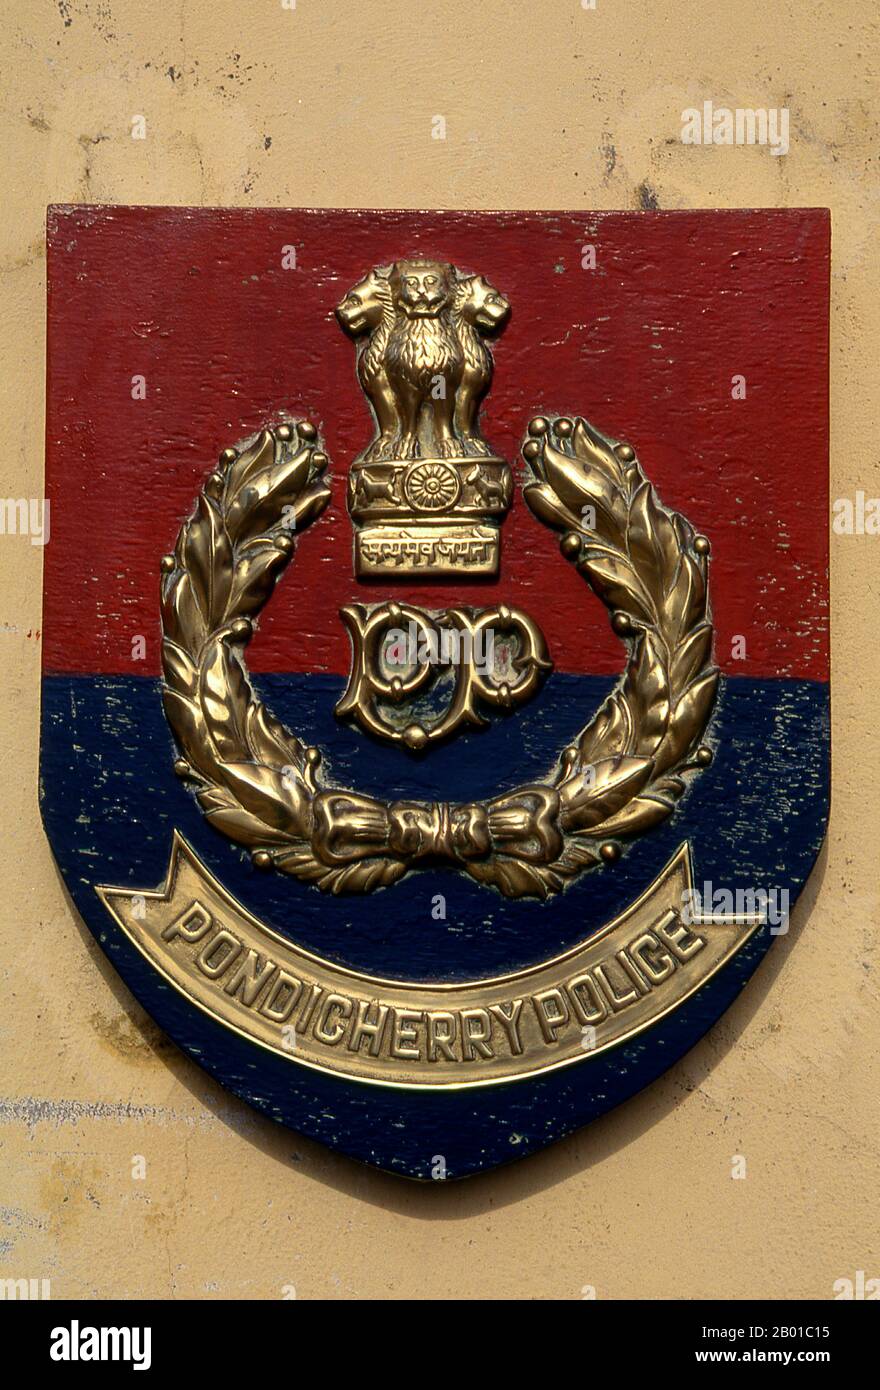 India: Emblema della polizia di Pondicherry. Pondicherry era la capitale degli ex territori francesi in India. Oltre alla stessa Pondi – acquisita da un governatore locale nel 1674 – questi includevano Chandernagore in Bengala (1690); Mahé in Kerala (1725); Yanam in Andhra Pradesh (1731); e Karaikal in Tamil Nadu (1739). Chandernagore è tornato in India tre anni dopo l'indipendenza, nel 1951, e fu assorbito nel Bengala Occidentale. Tornati in India nel 1956, i quattro territori rimanenti furono costituiti come territorio dell'Unione di Pondicherry nel 1962. Foto Stock